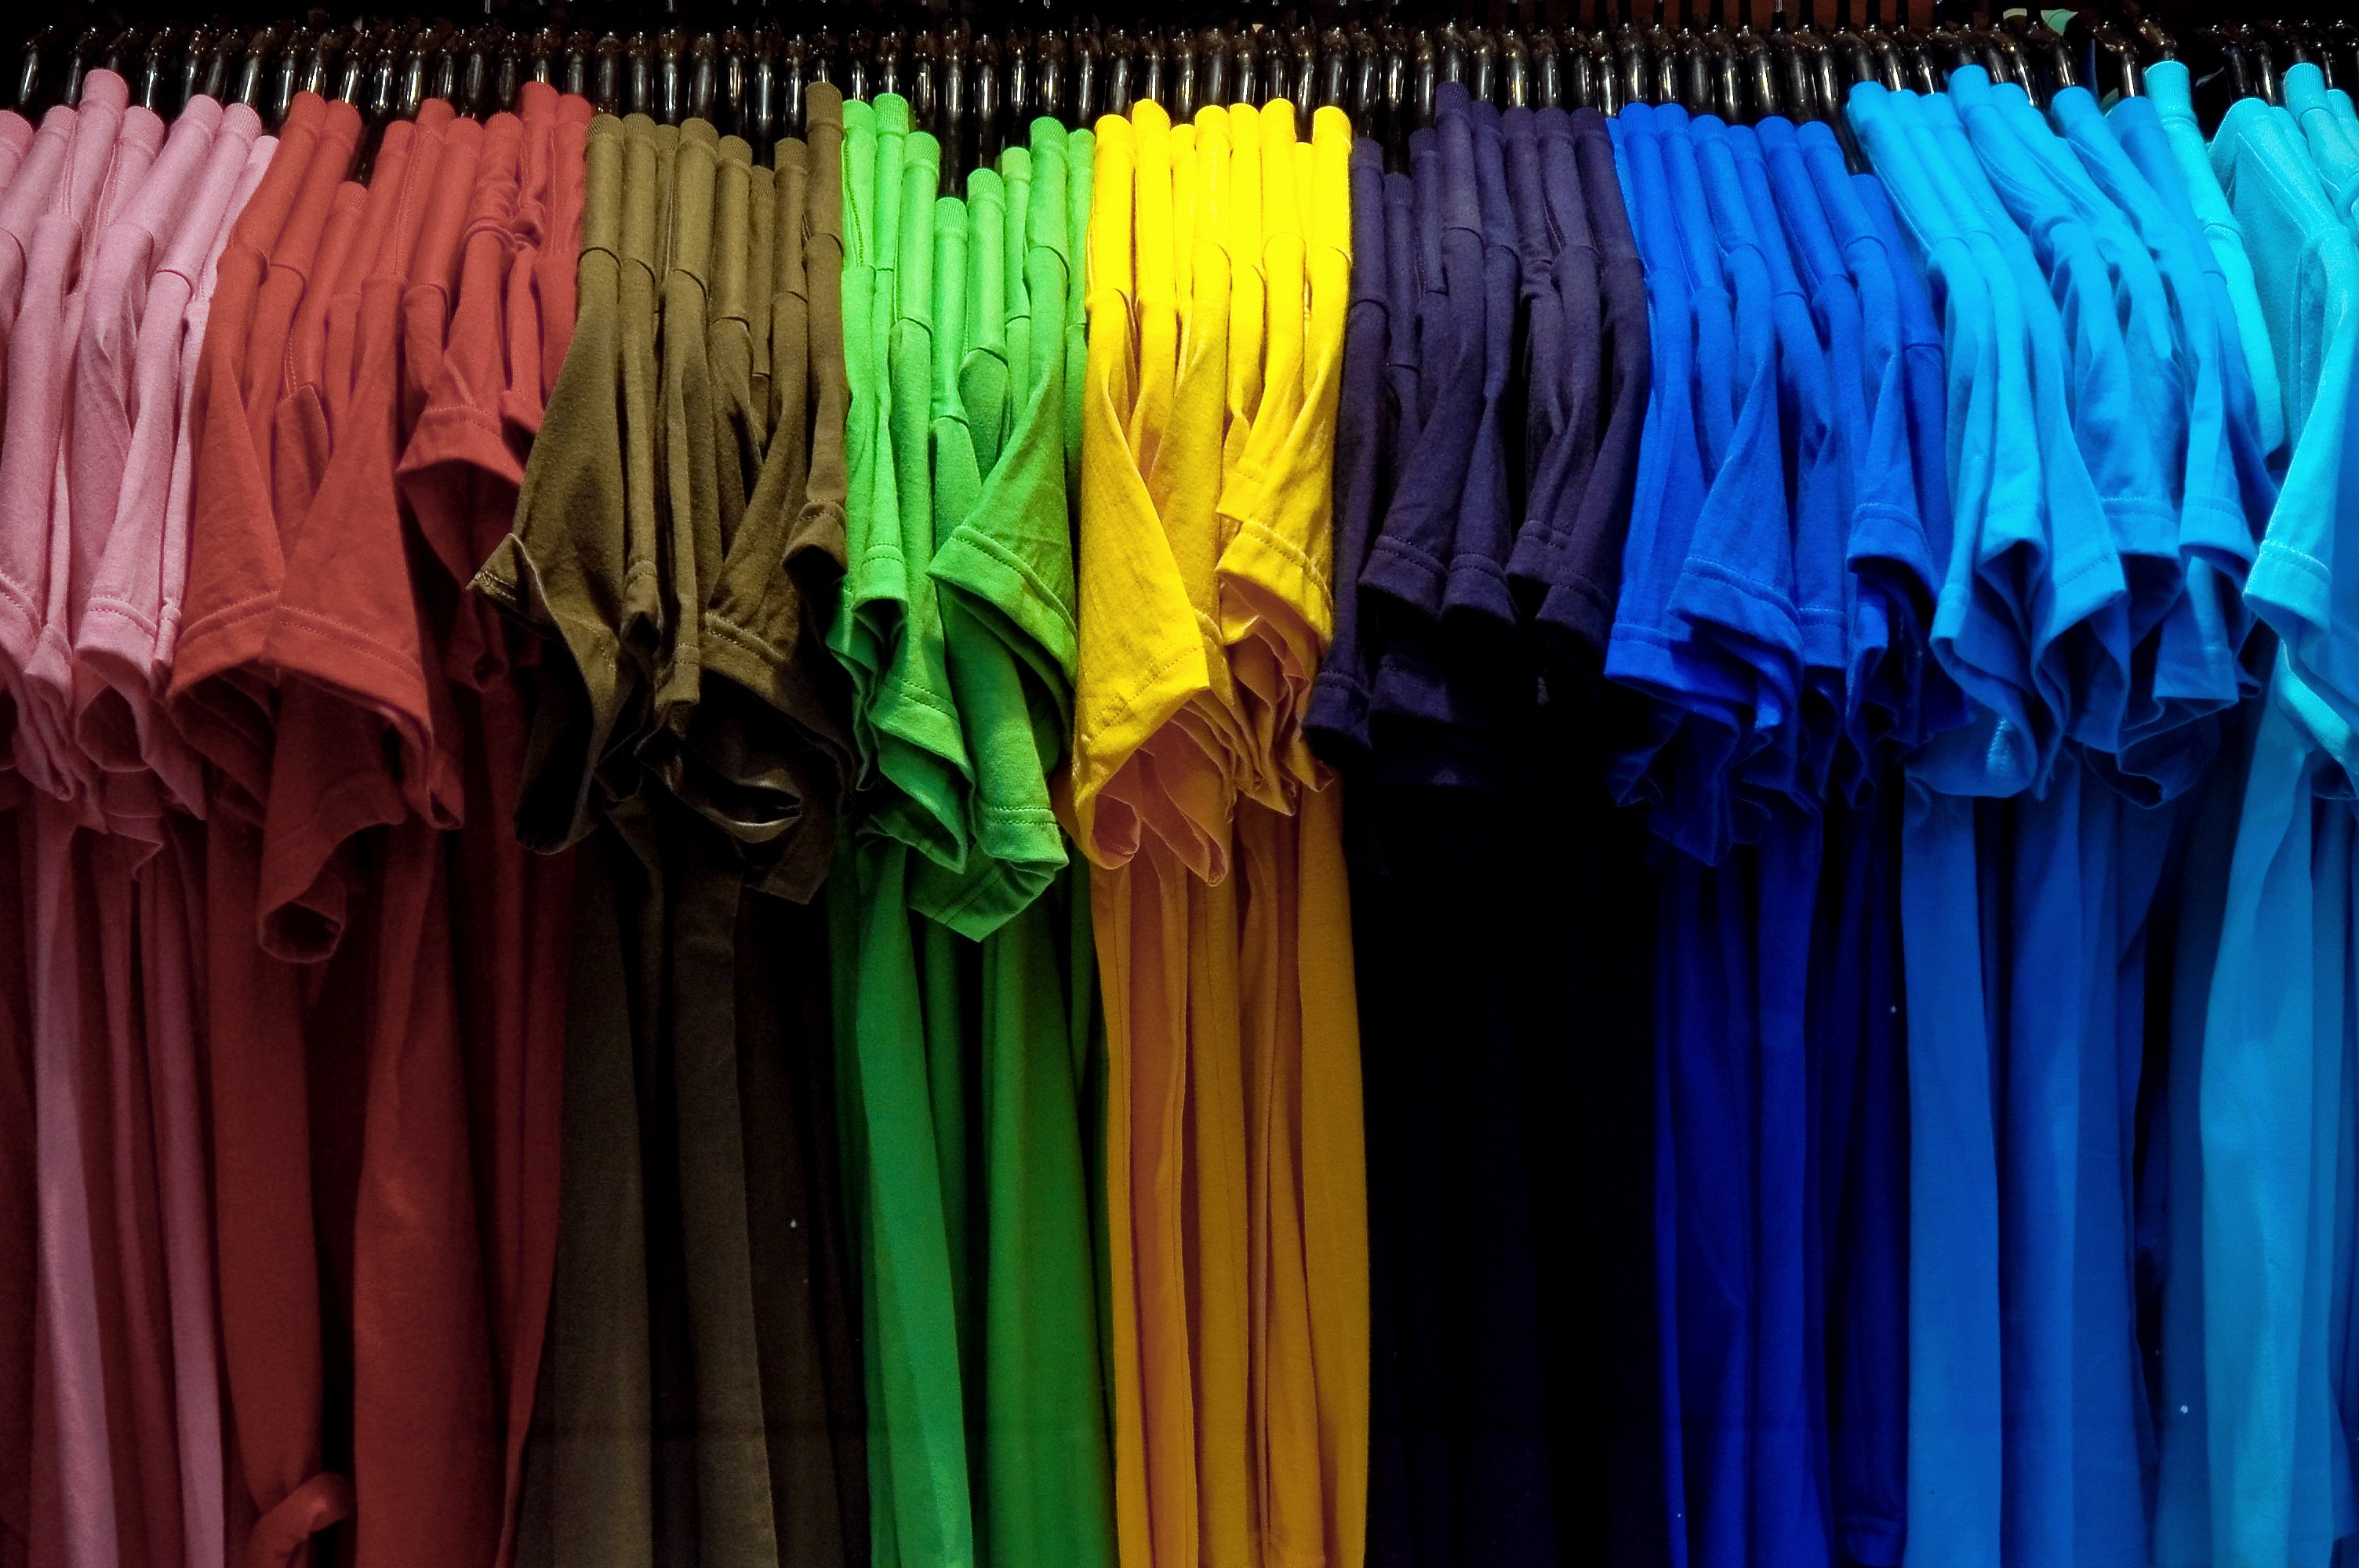 Футболки в гардеробе. Футболка на вешалке. Много футболок на вешалке. Одежда разного цвета. Цветные футболки на плечиках.